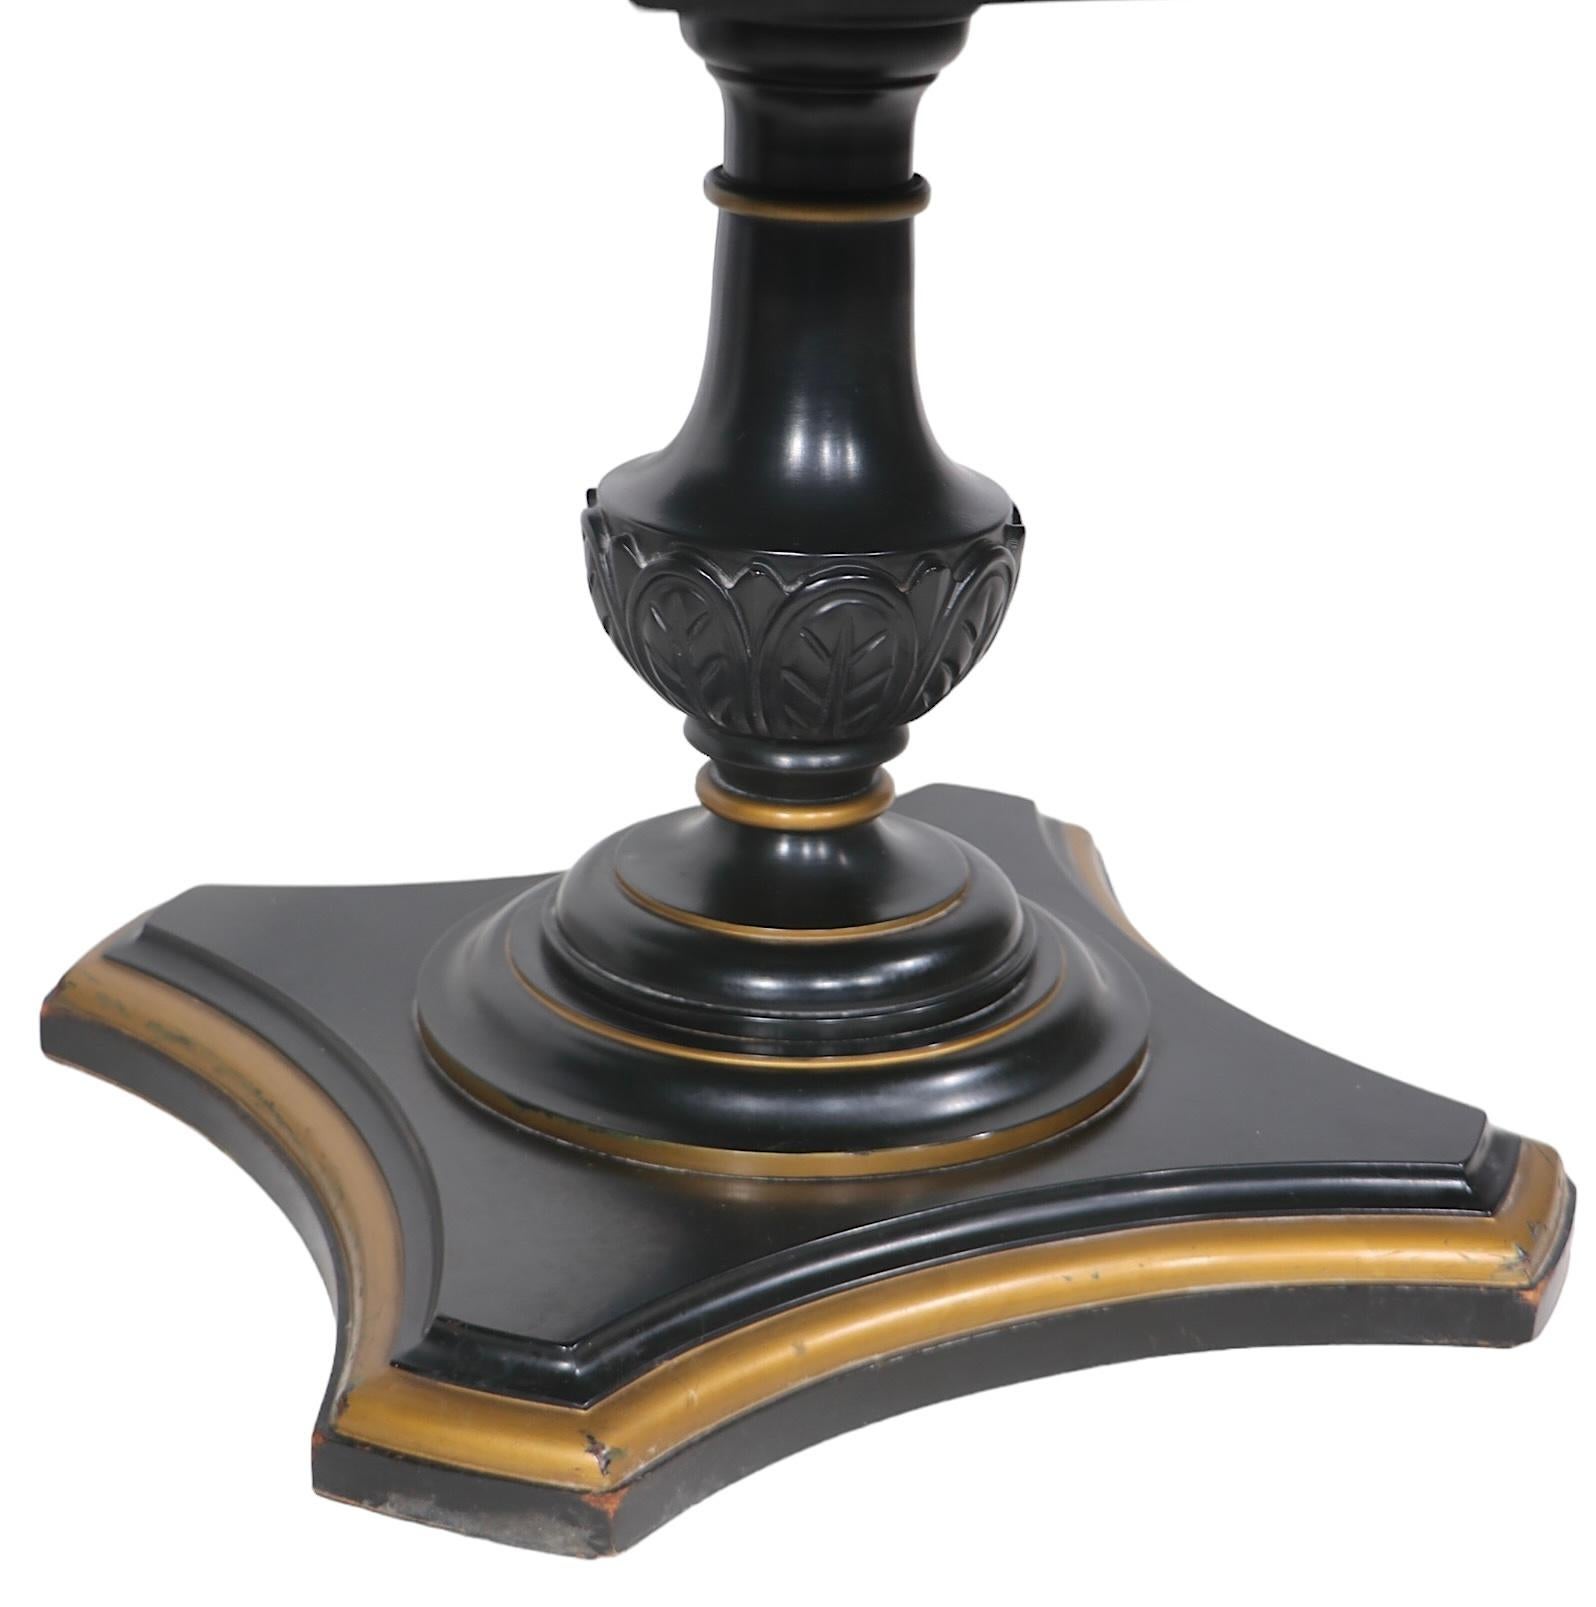 Zwei neoklassische Beistelltische im Hollywood-Regency-Stil mit schönen dicken Marmorplatten, die auf handgeschnitzten Holzsockeln mit schwarzer Lackierung und Goldverzierung ruhen. Die Tische funktionieren entweder als Beistelltisch, Beistelltisch